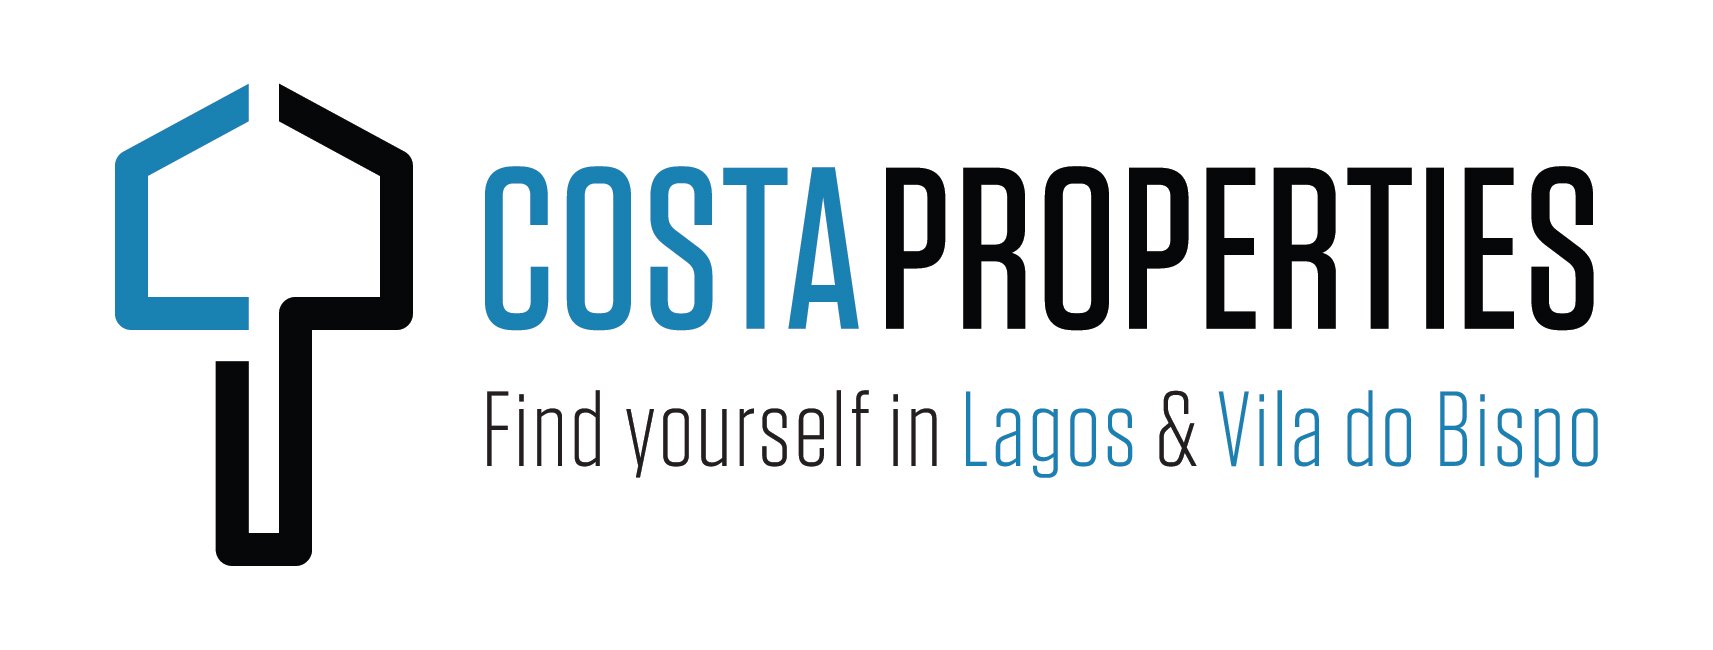 Costa Properties - Guia Imobiliário